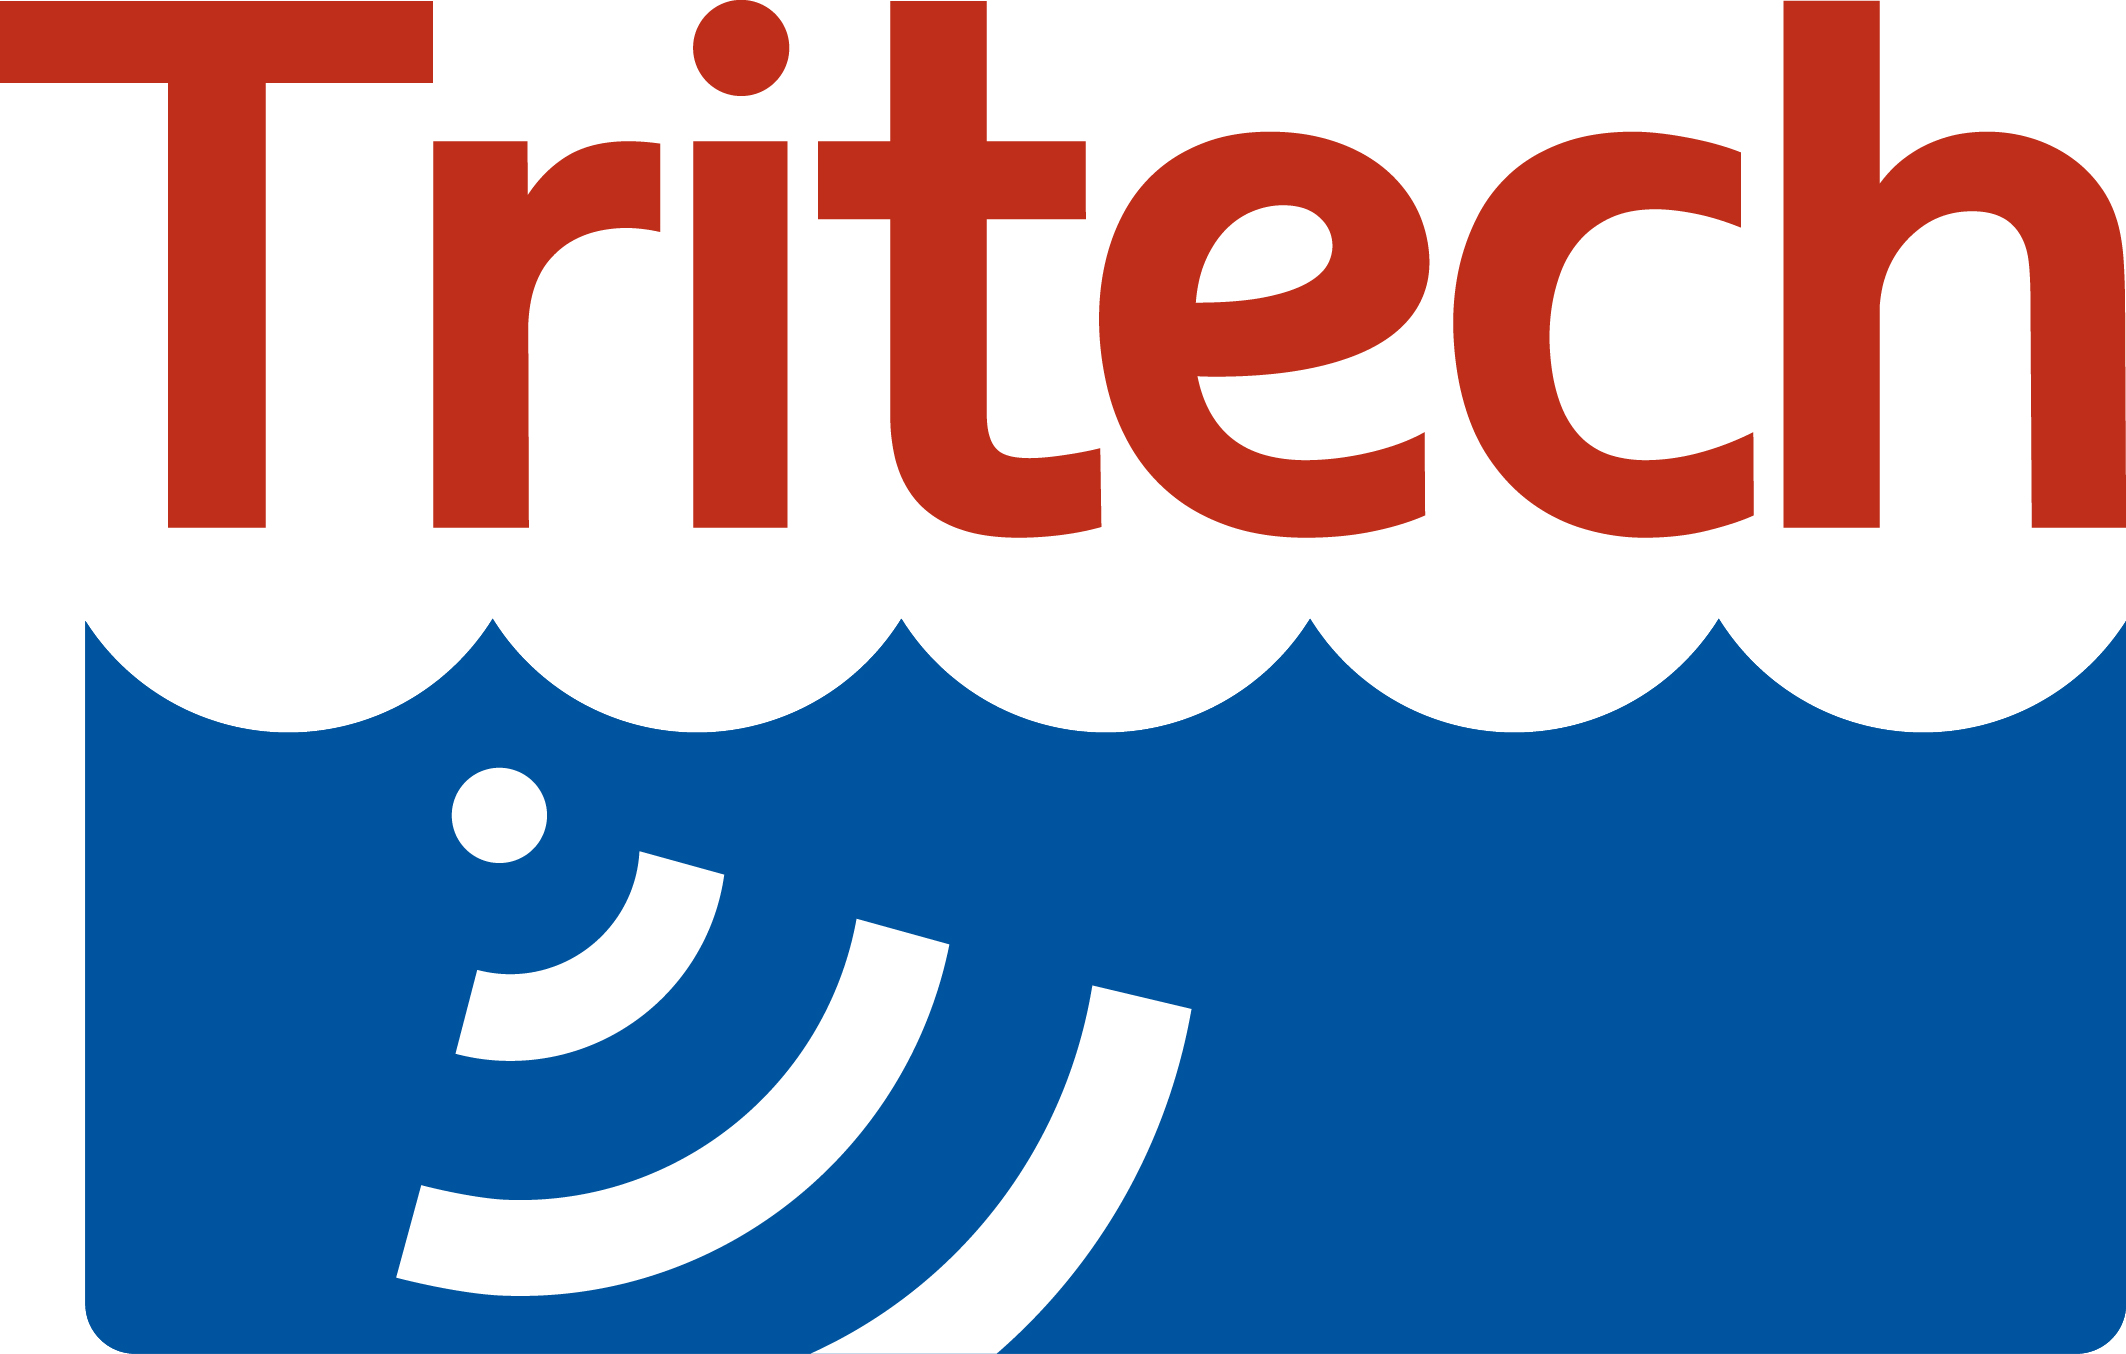 Tritech Logo